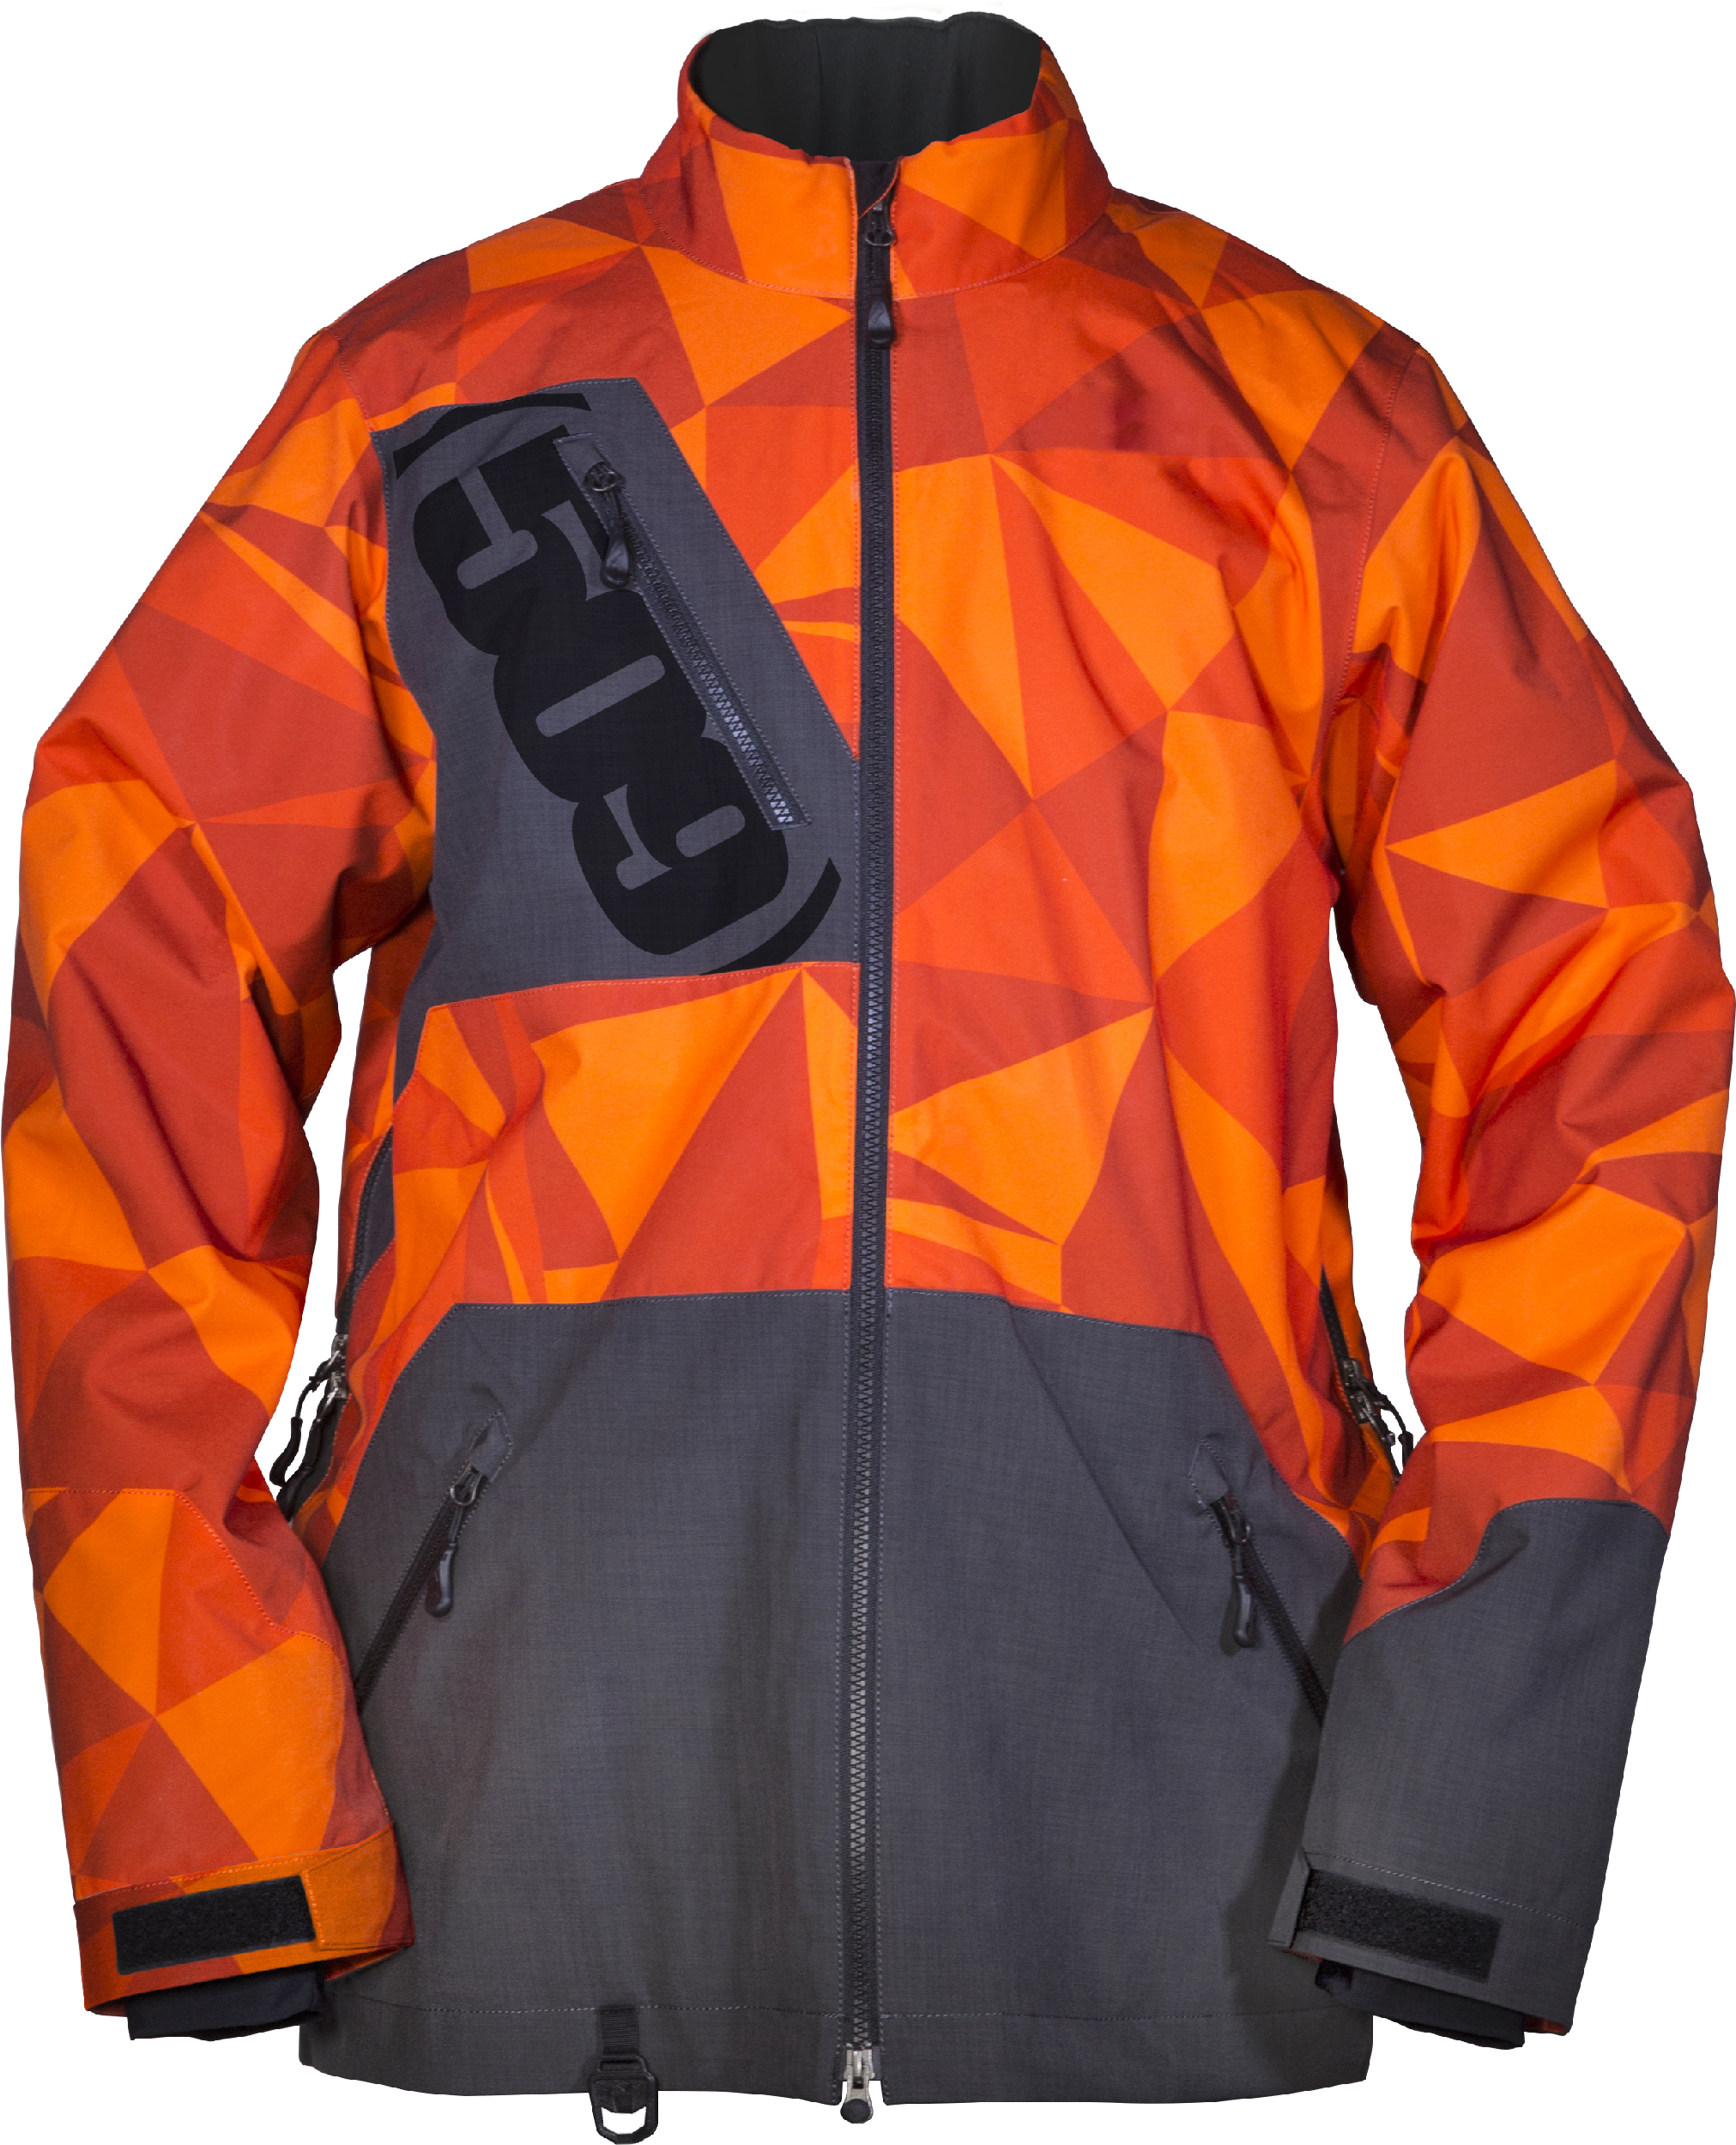 Orange - Large 509 Range Insulated Jacket